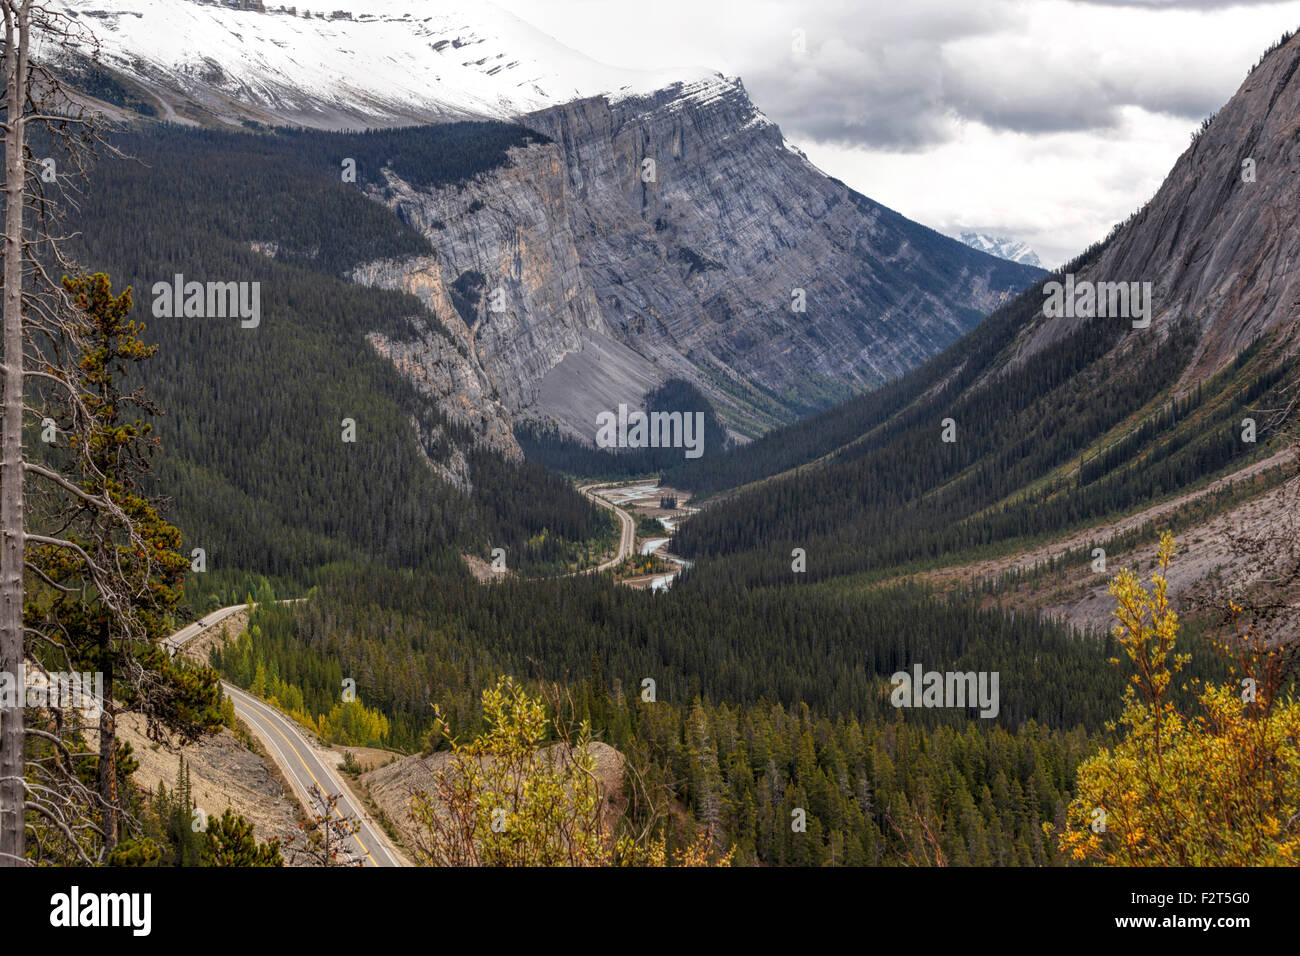 Regardant vers le bas sur la Promenade des glaciers dans le parc national de Banff, dans les Rocheuses canadiennes, Alberta, Canada, Amérique du Nord. Banque D'Images